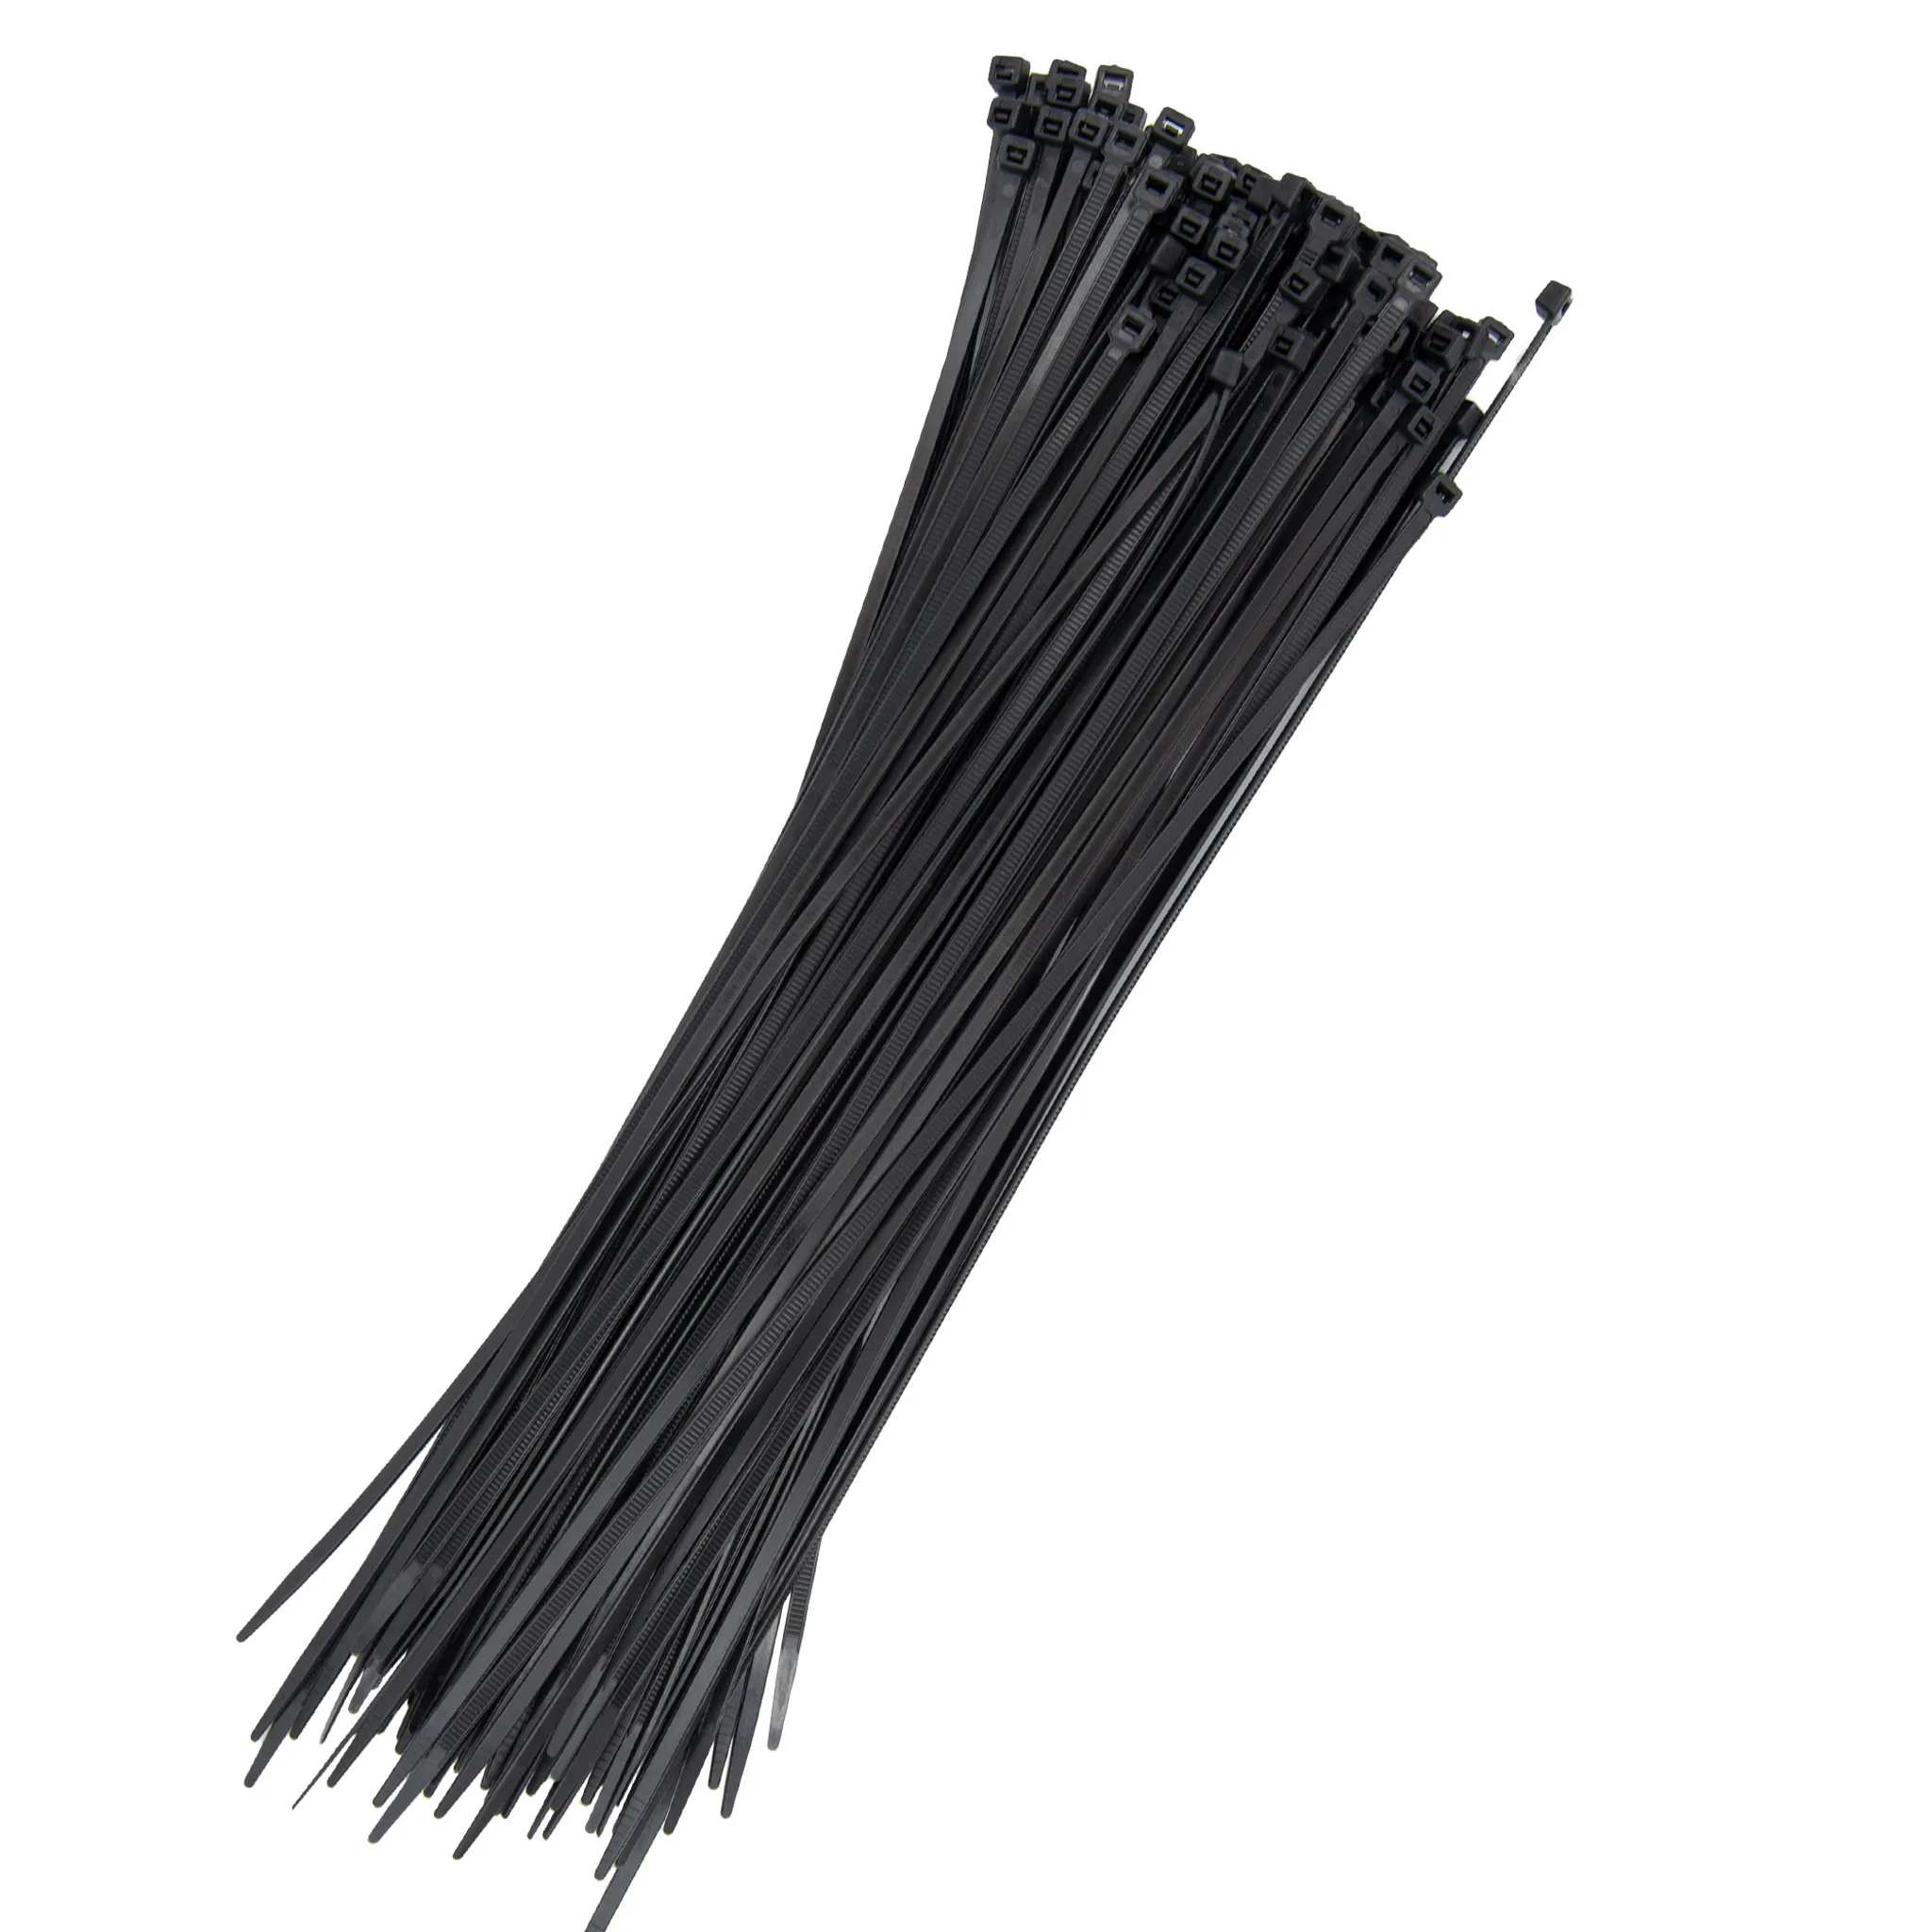 Kabelbinder schwarz wiederverwendbar 7,6 x 300 mm - Industrie PLA, 8,44 €